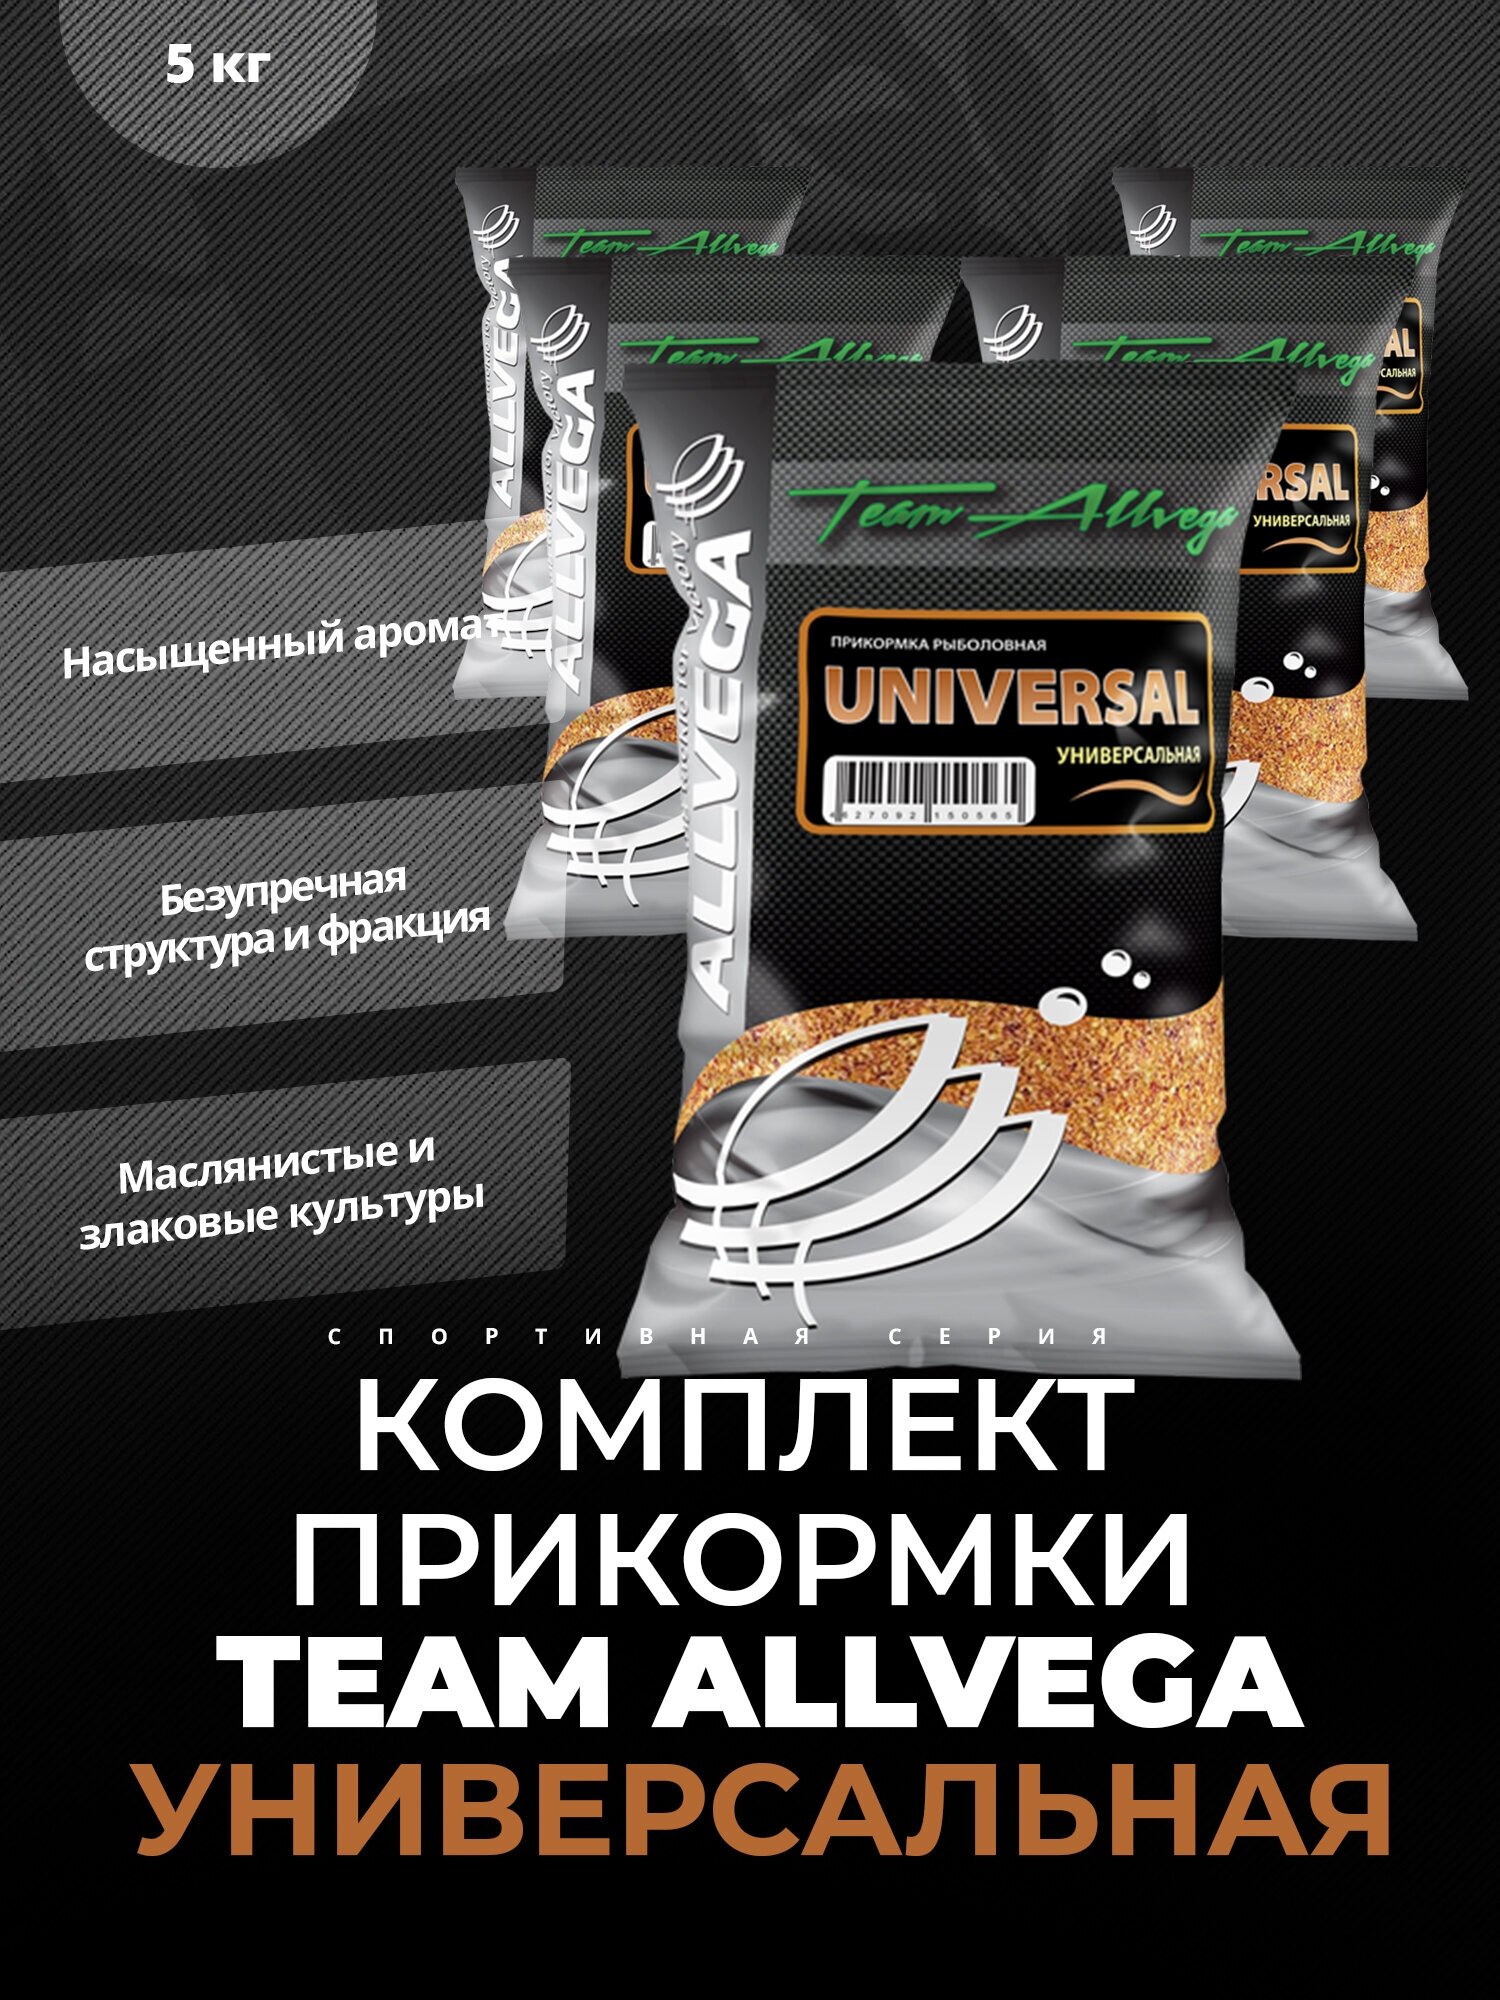 Прикормка ALLVEGA "Team Allvega Universal" 1кг (универсальная) 5 пакетов по 1 кг.